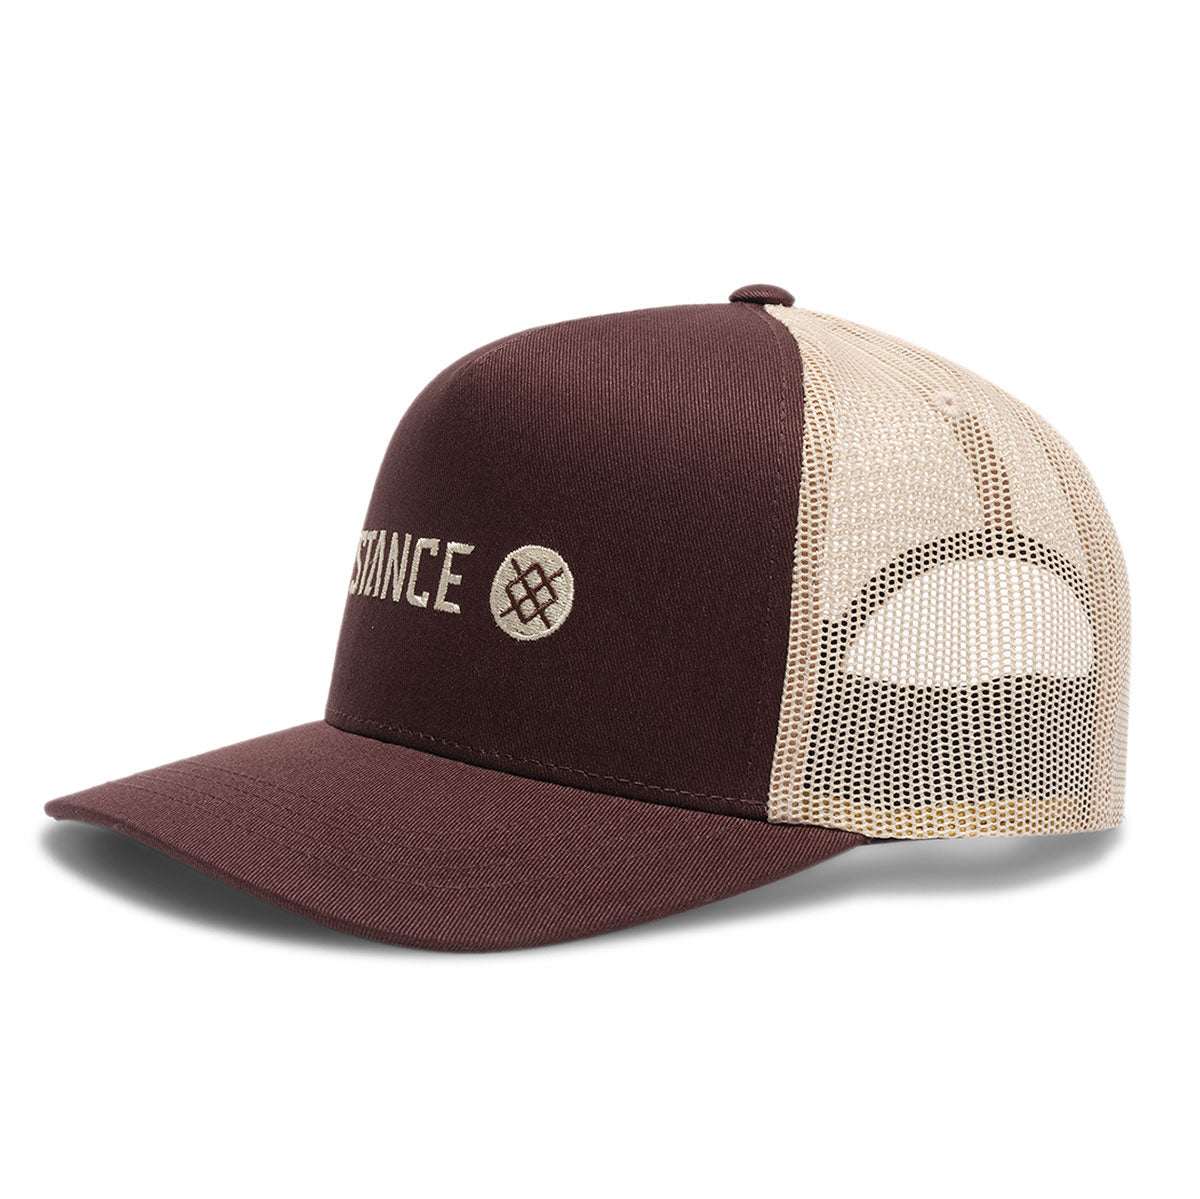 Stance Icon Trucker Hat - Dark Brown image 1